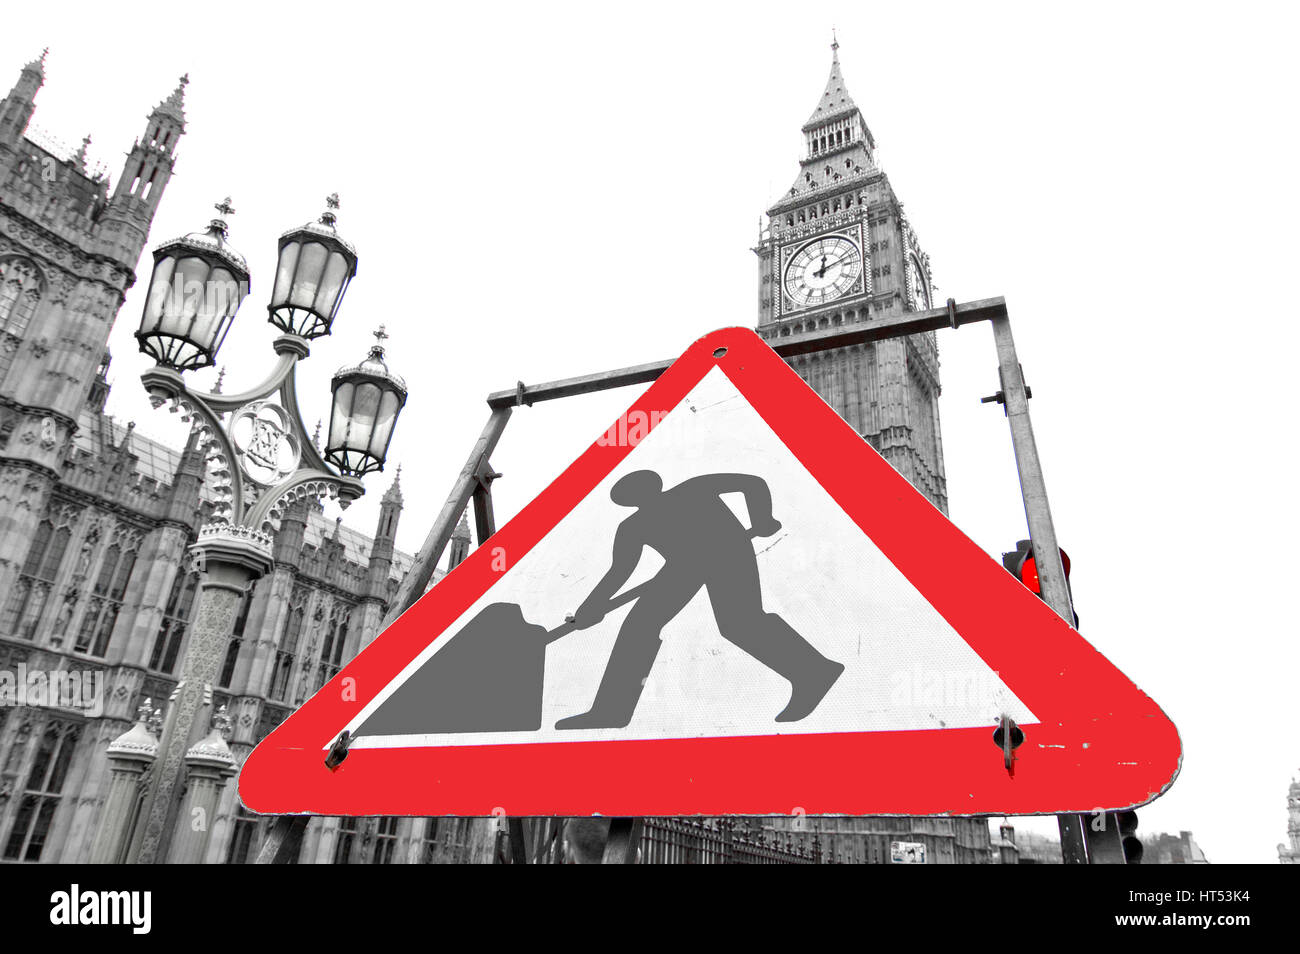 Londra - Marzo 14, 2015: Lavori in corso segno vicino al parlamento britannico. Questa immagine può essere utilizzata per illustrare politiche editoriali e articoli. Foto Stock